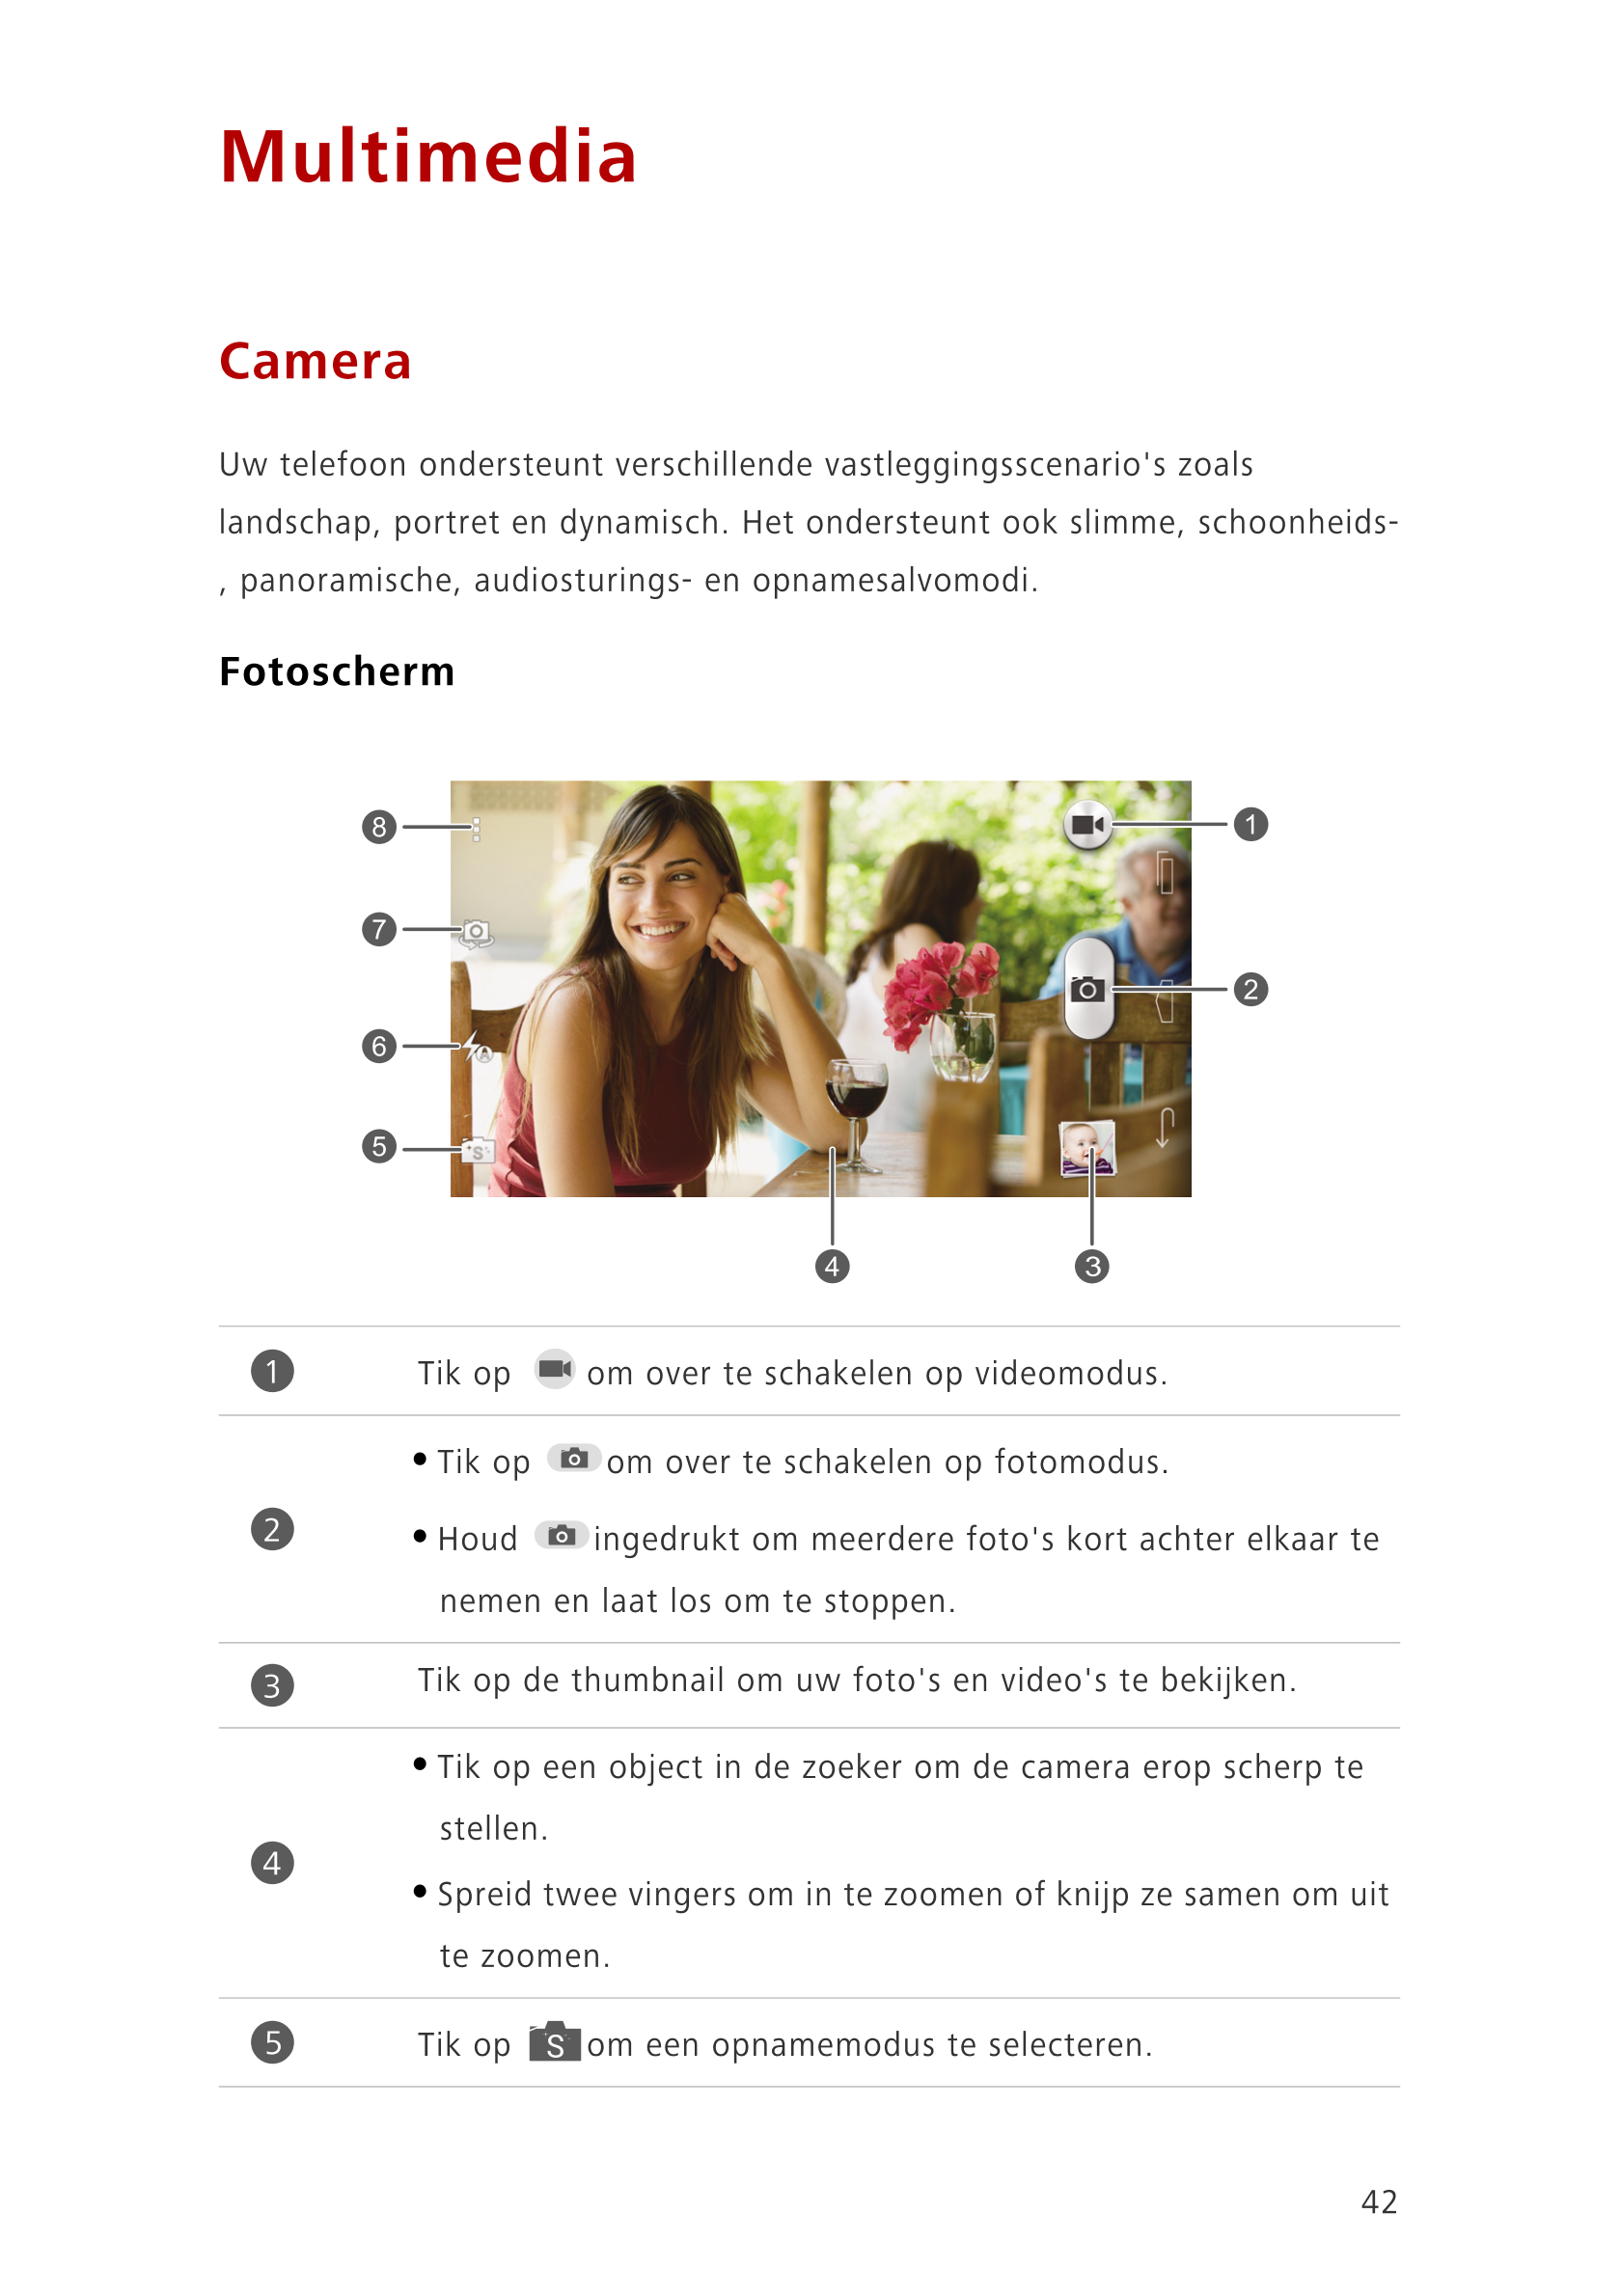 Multimedia
Camera
Uw telefoon ondersteunt verschillende vastleggingsscenario's zoals 
landschap, portret en dynamisch. Het onder